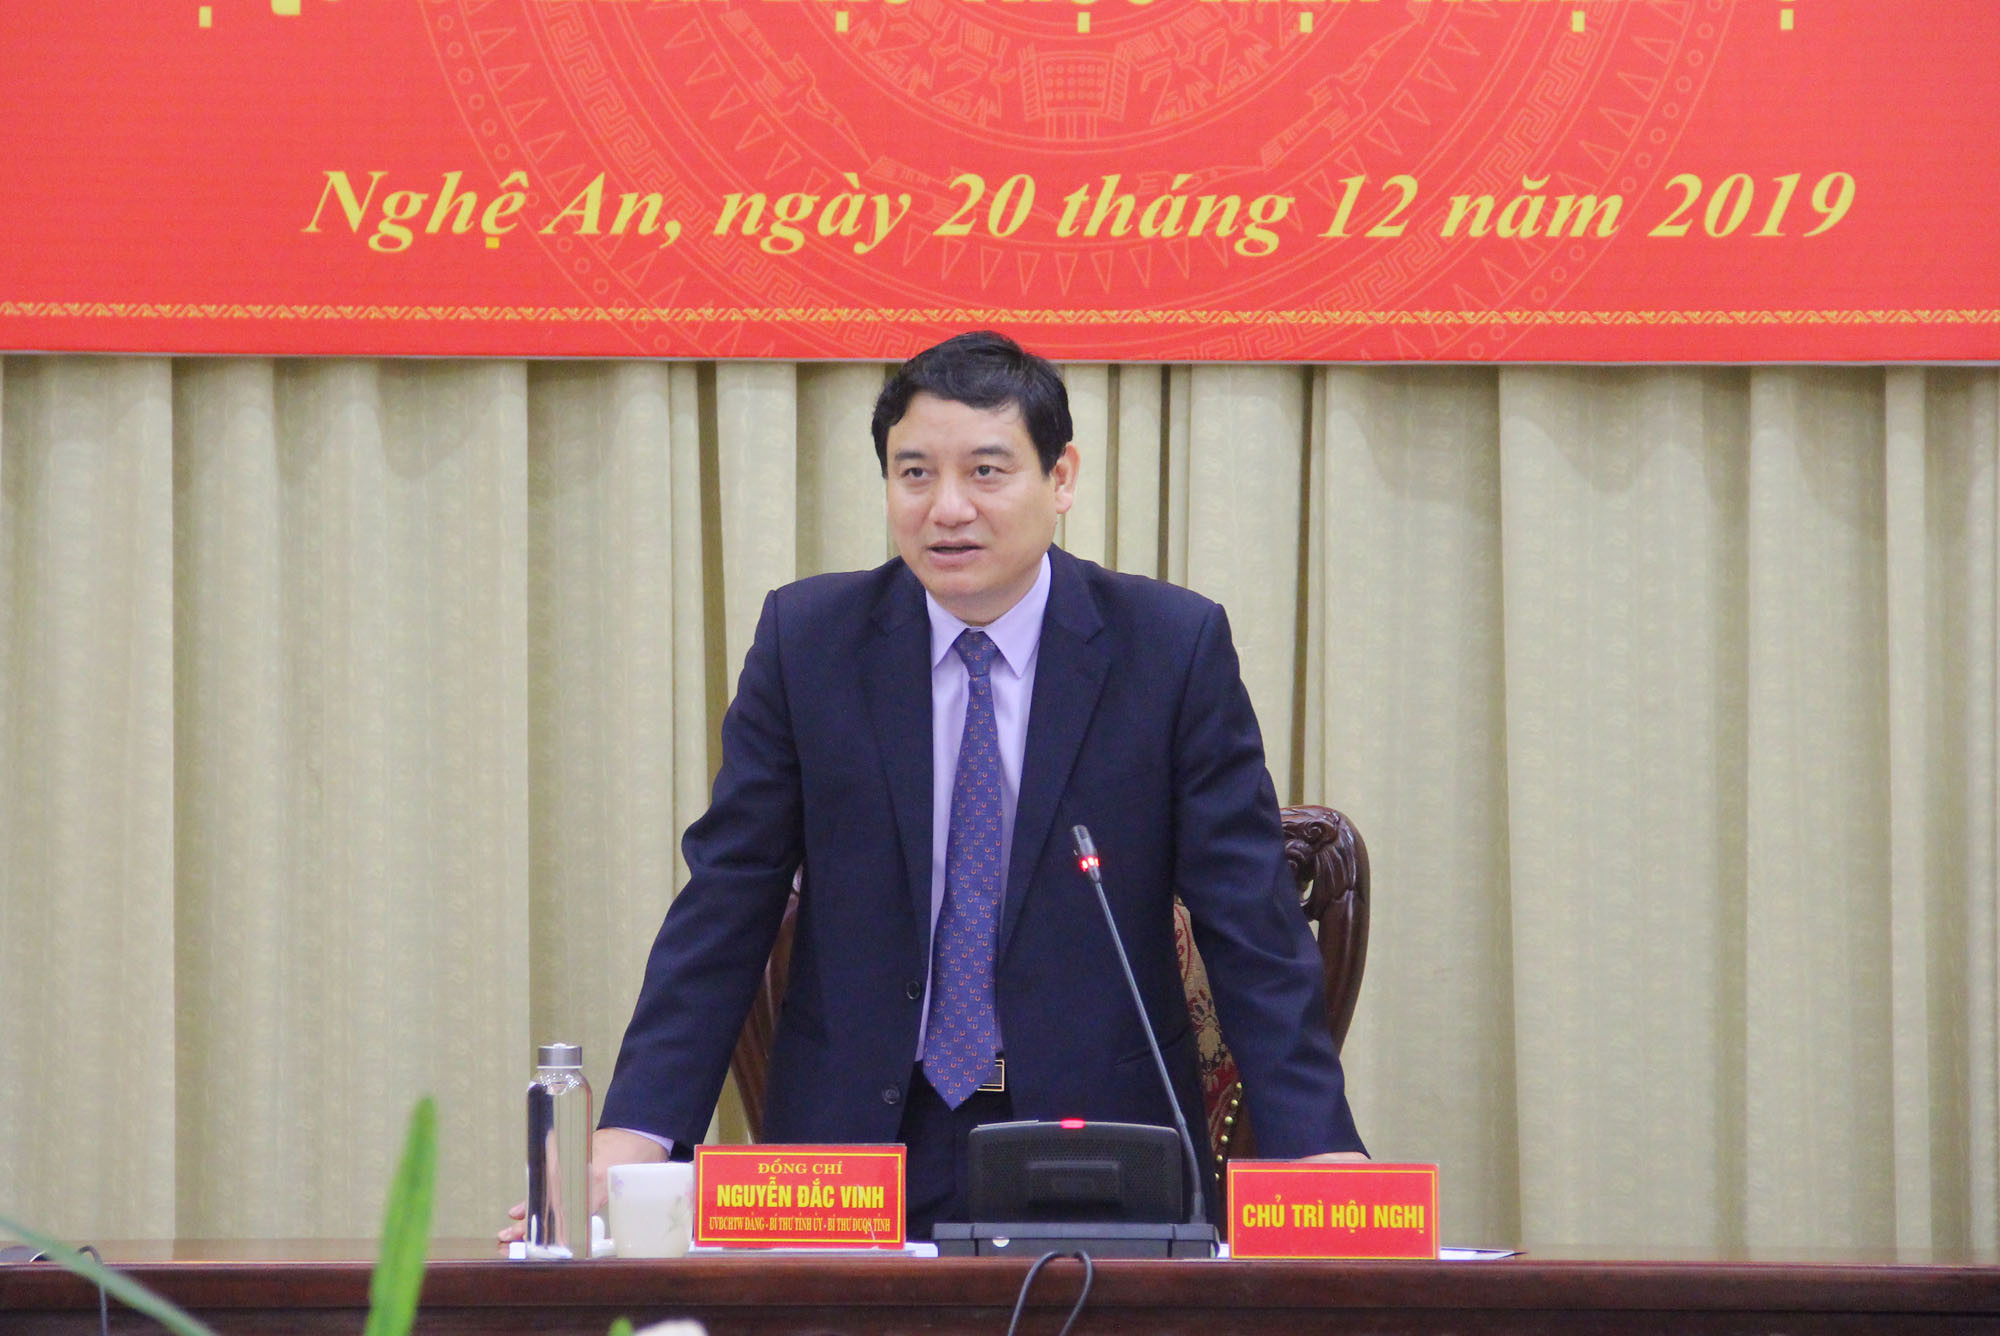 Bí thứ tỉnh ủy Nguyễn Đăc